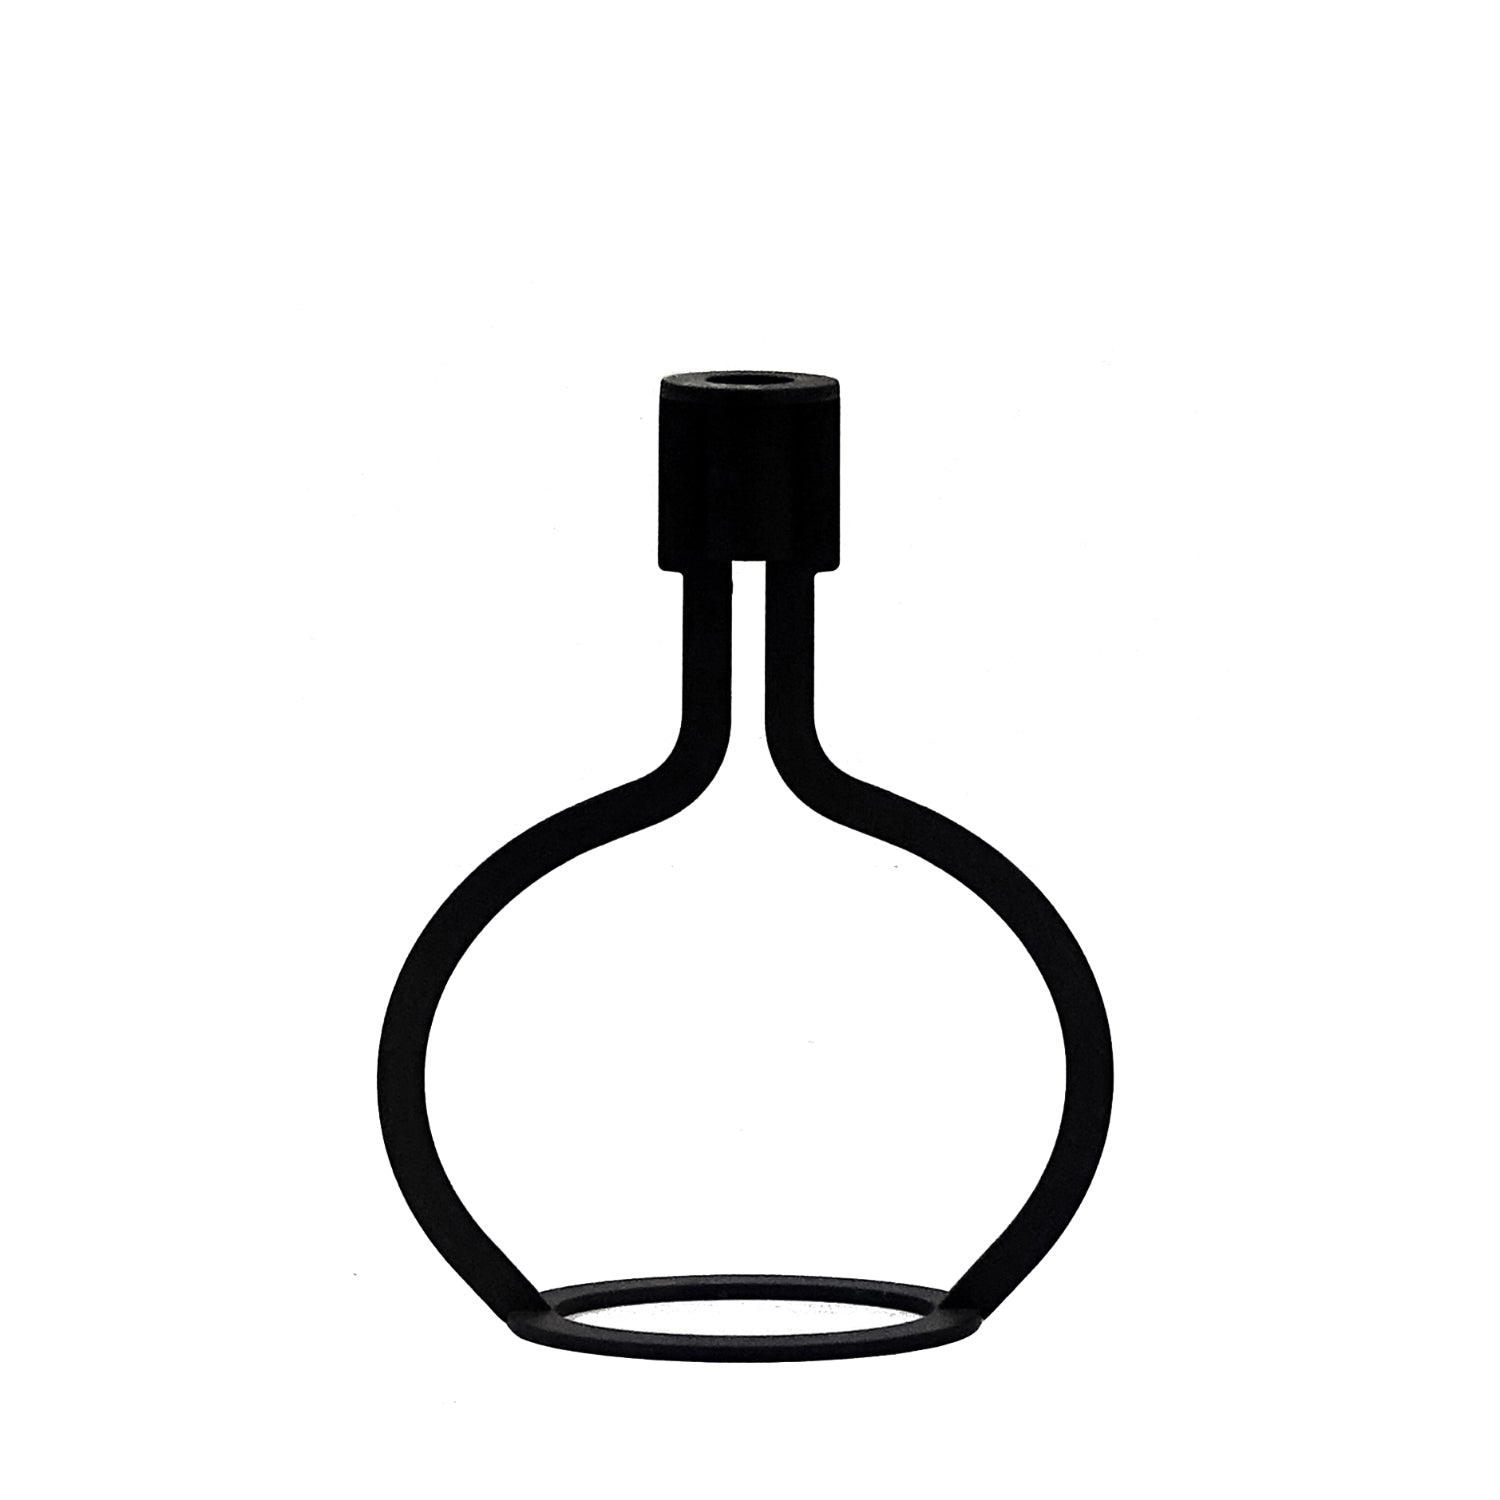 Bottle Kandelaar Cognac│Peter van de Water - Goods│art. BK 10.03│voorkant met witte achtergrond